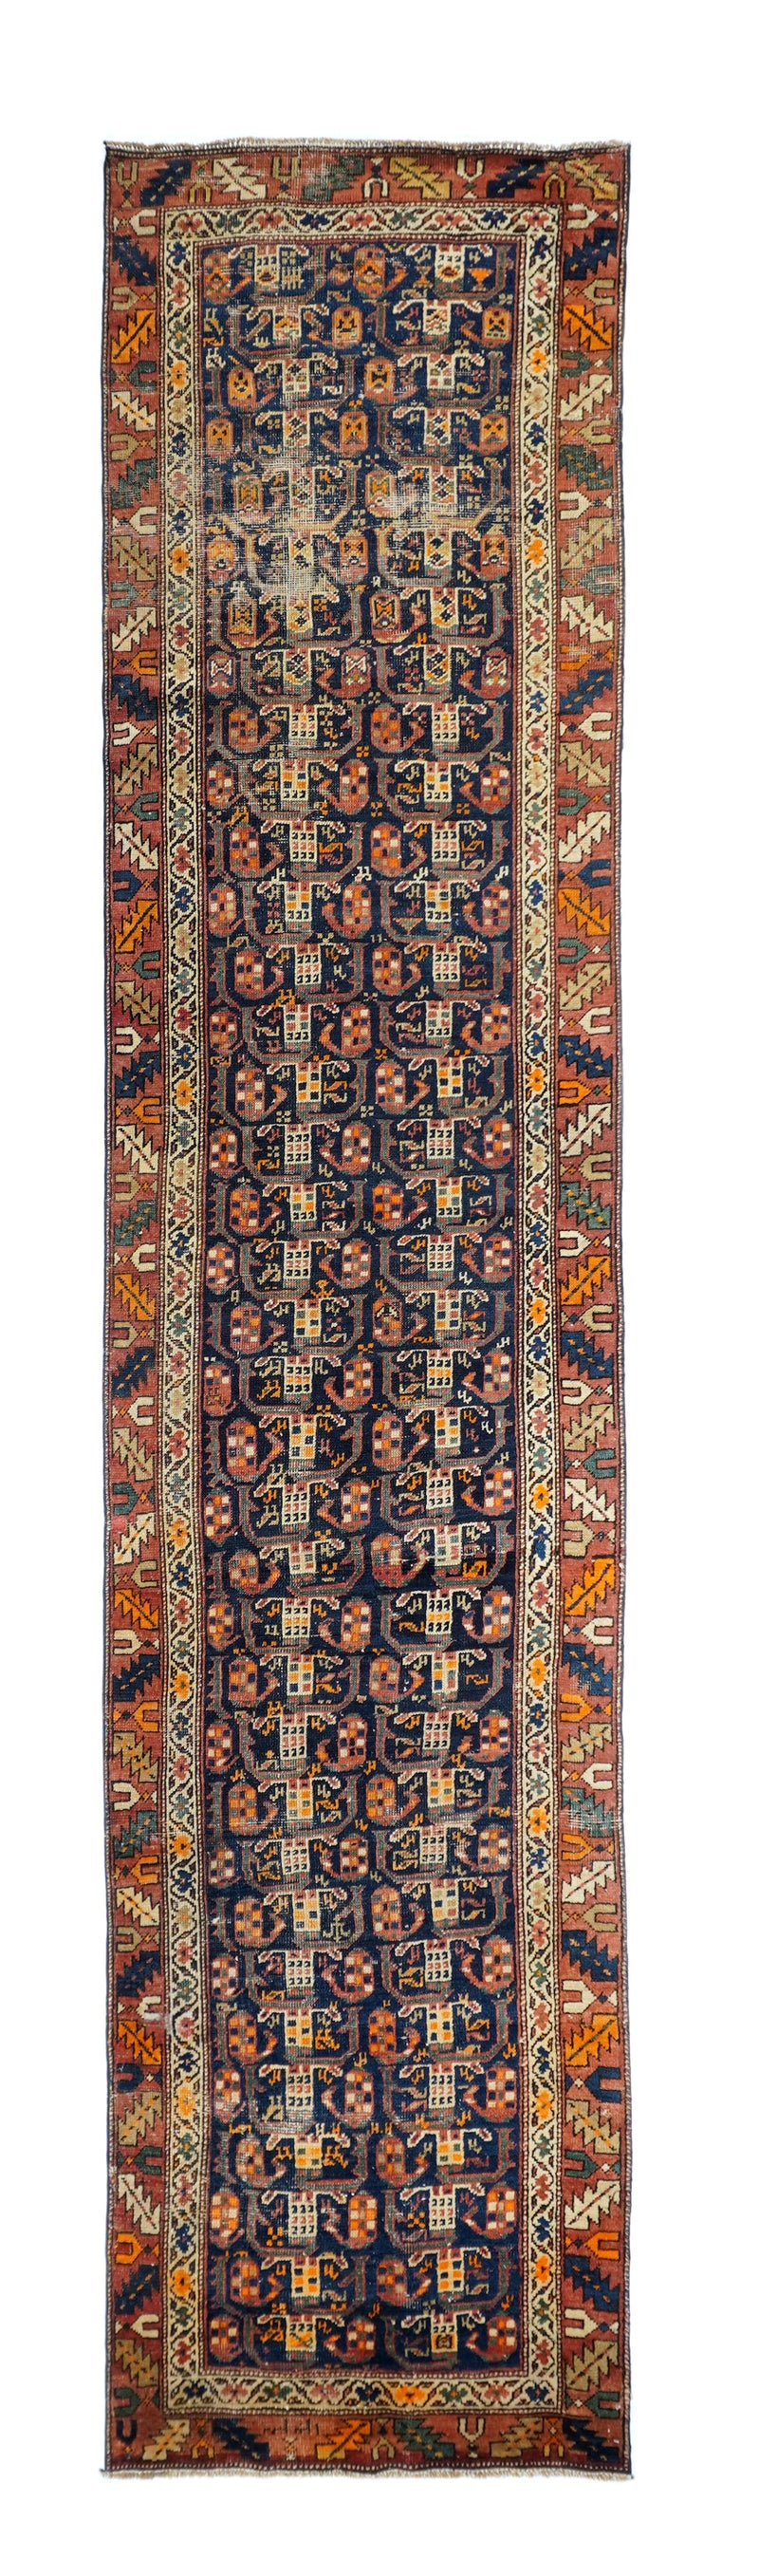 Antique Persian North West Persia Rug